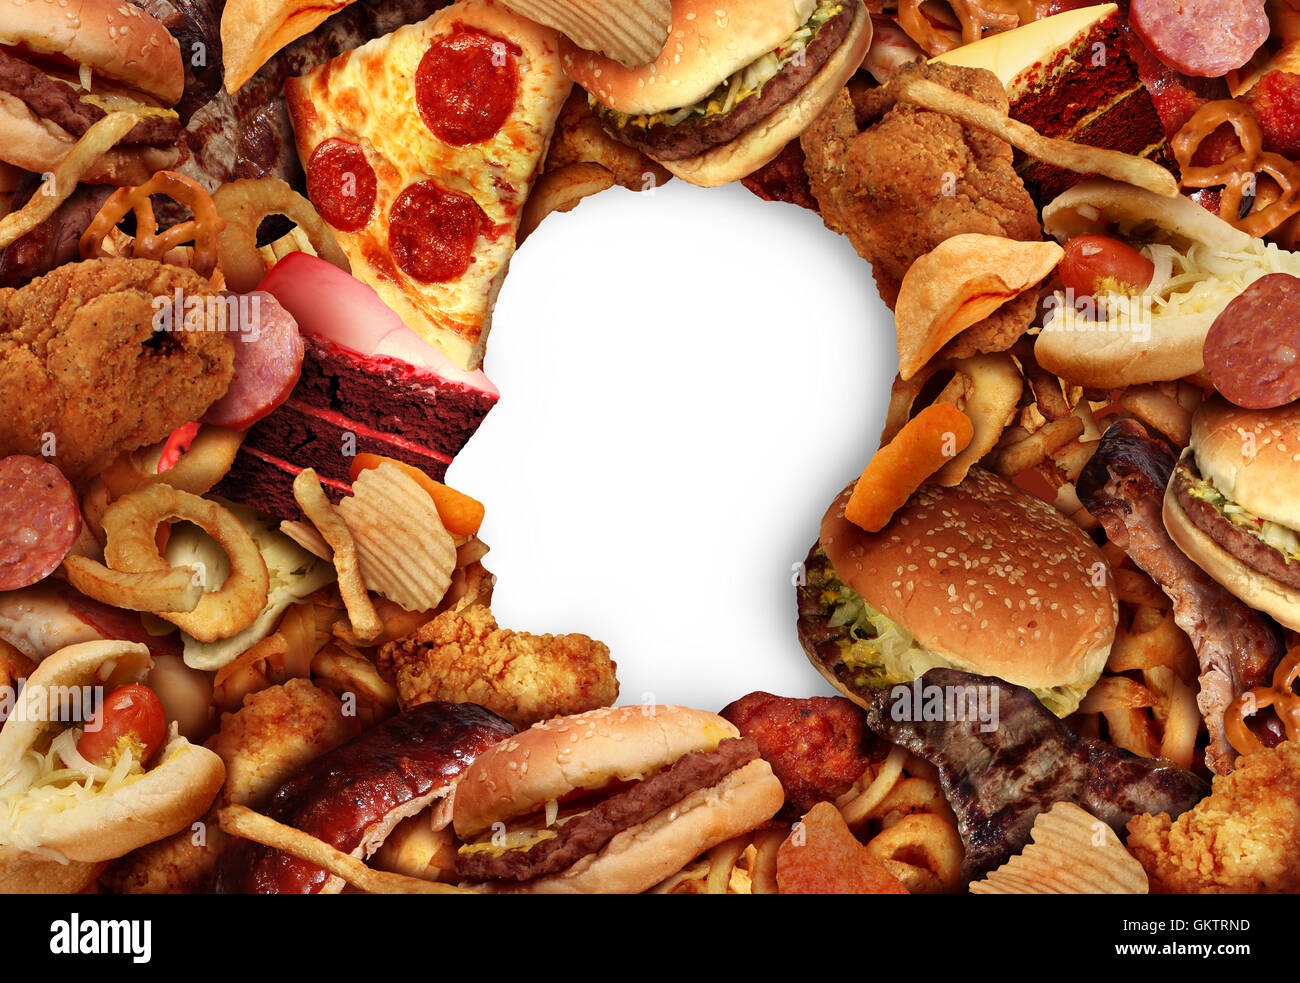 Comer los alimentos grasos y el concepto de salud de la dieta malsana con un grupo de comida rápida grasienta en la forma de una cabeza humana símbolo de nutrición peligrosas y el icono del estilo de vida de adicción a arriesgados aperitivos en un estilo de ilustración 3D. Foto de stock